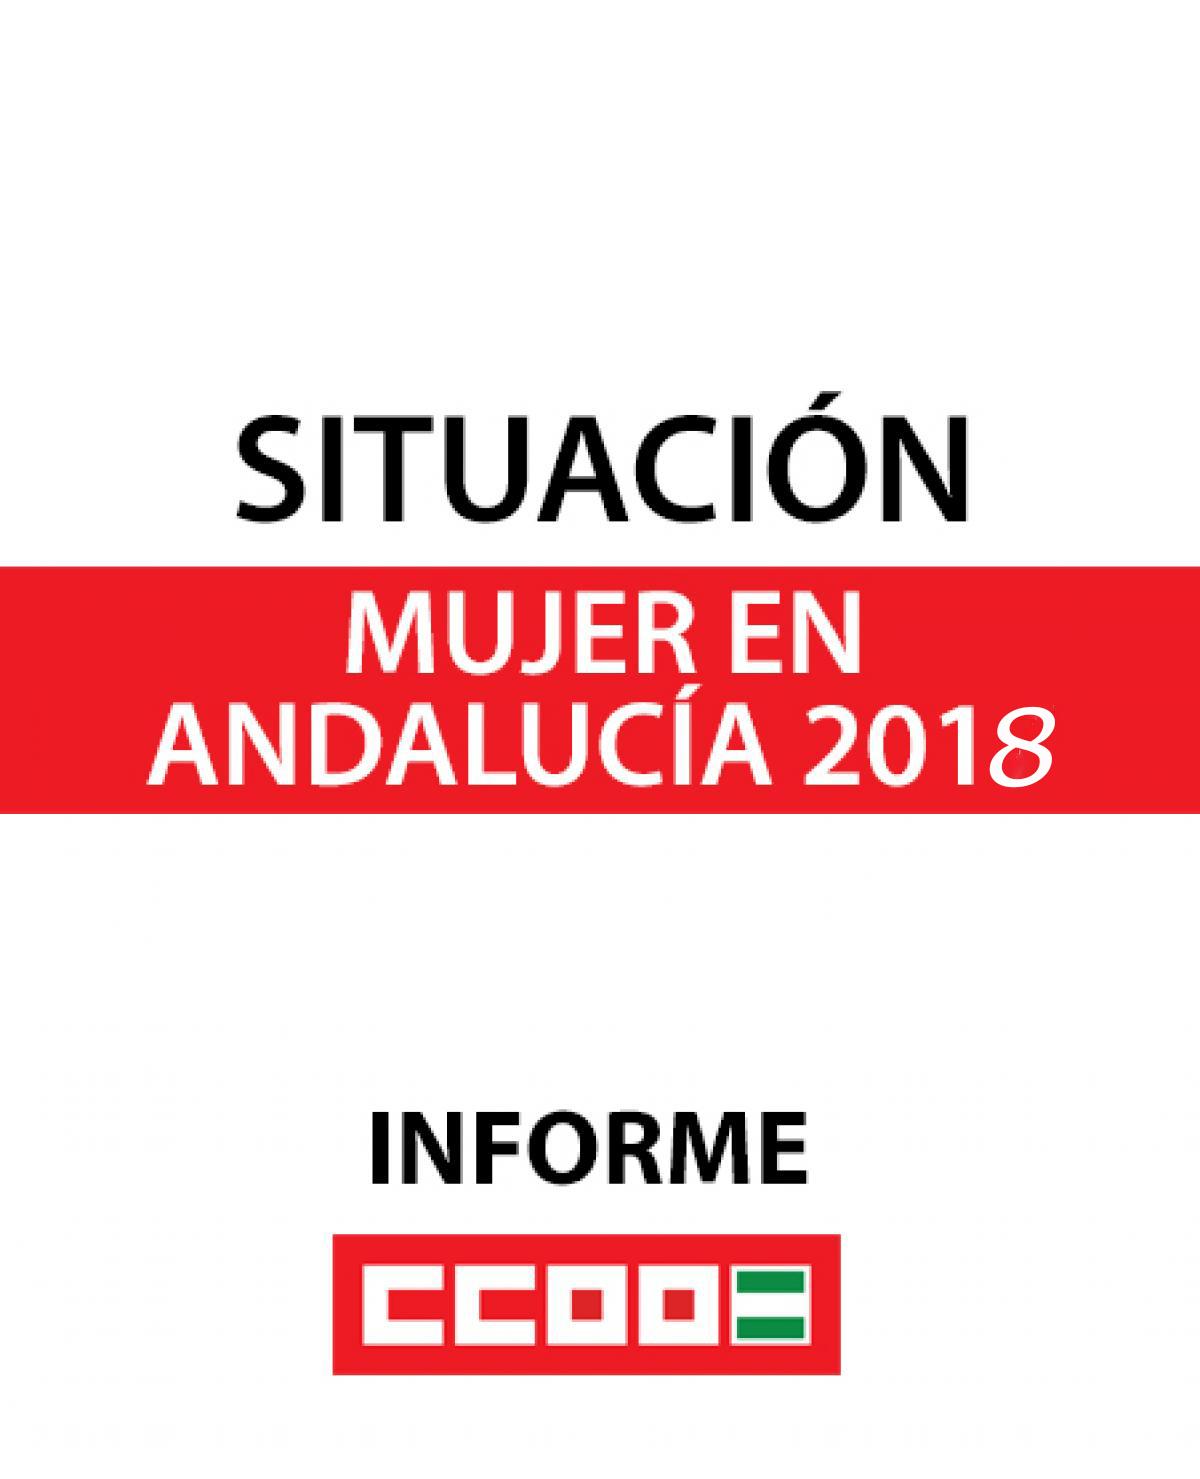 Informe completo sobre la situacin laboral de la mujer en Andaluca 2018